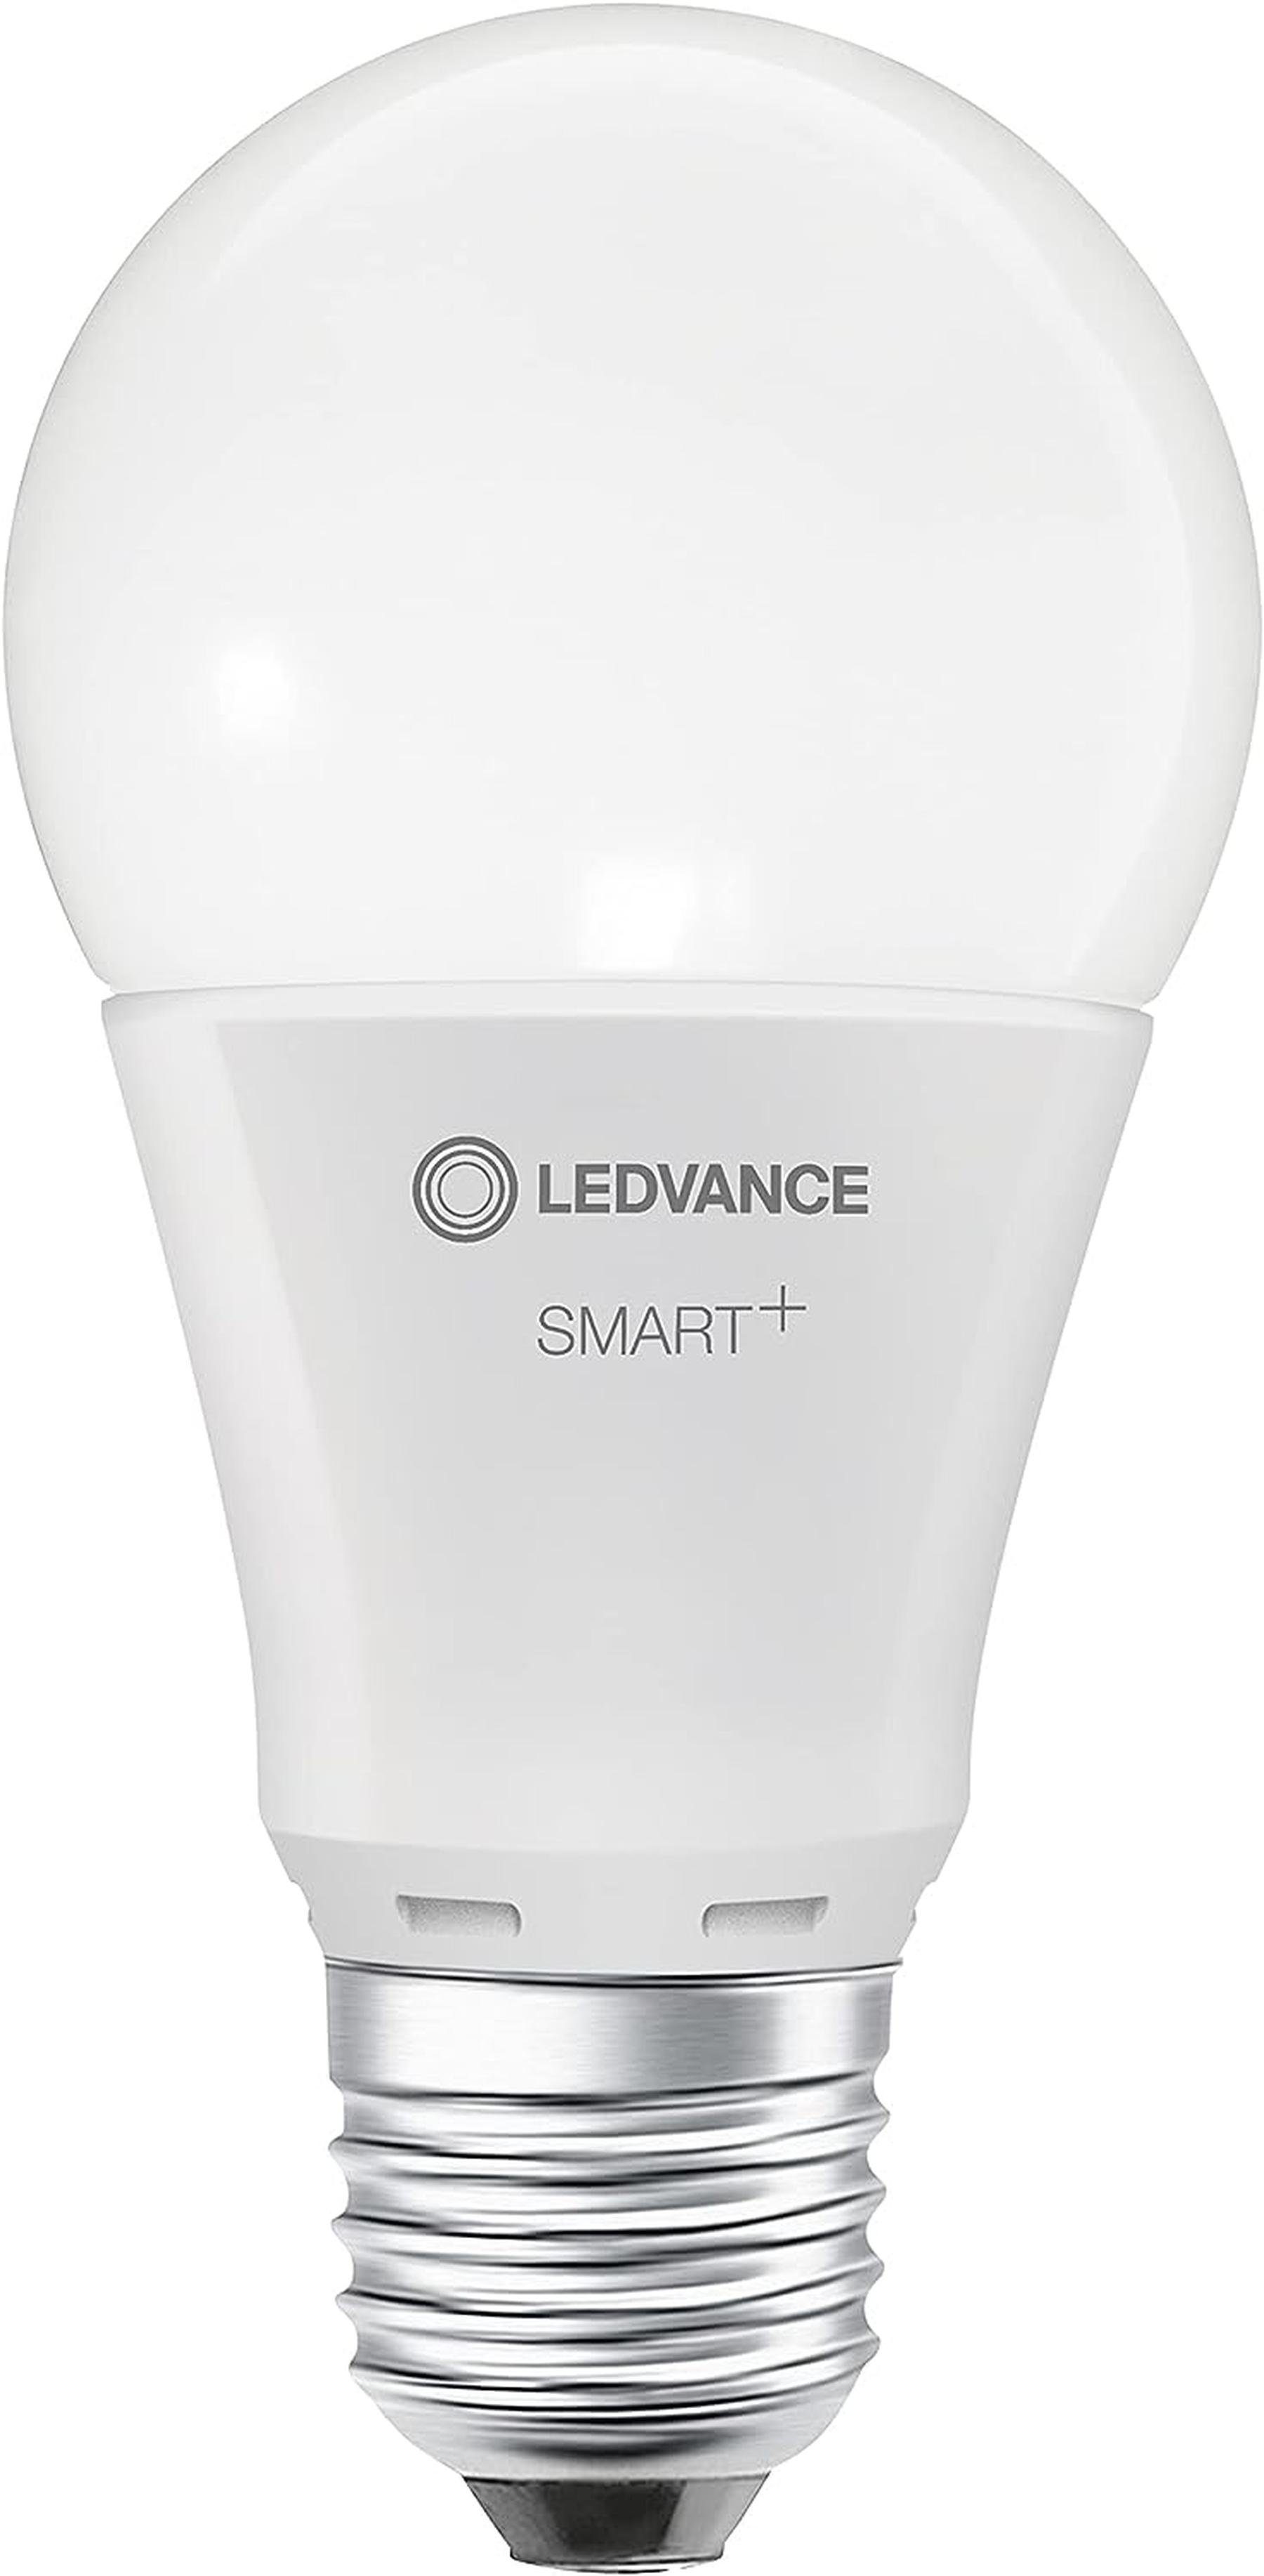 Ledvance LED-Leuchtmittel Smart+ E27 LED WiFi Lampe 9,5W Glühbirne warmweiß dimmbar [3er], E27, Warmweiss, Dimmbar, Energiesparend, Mattiert